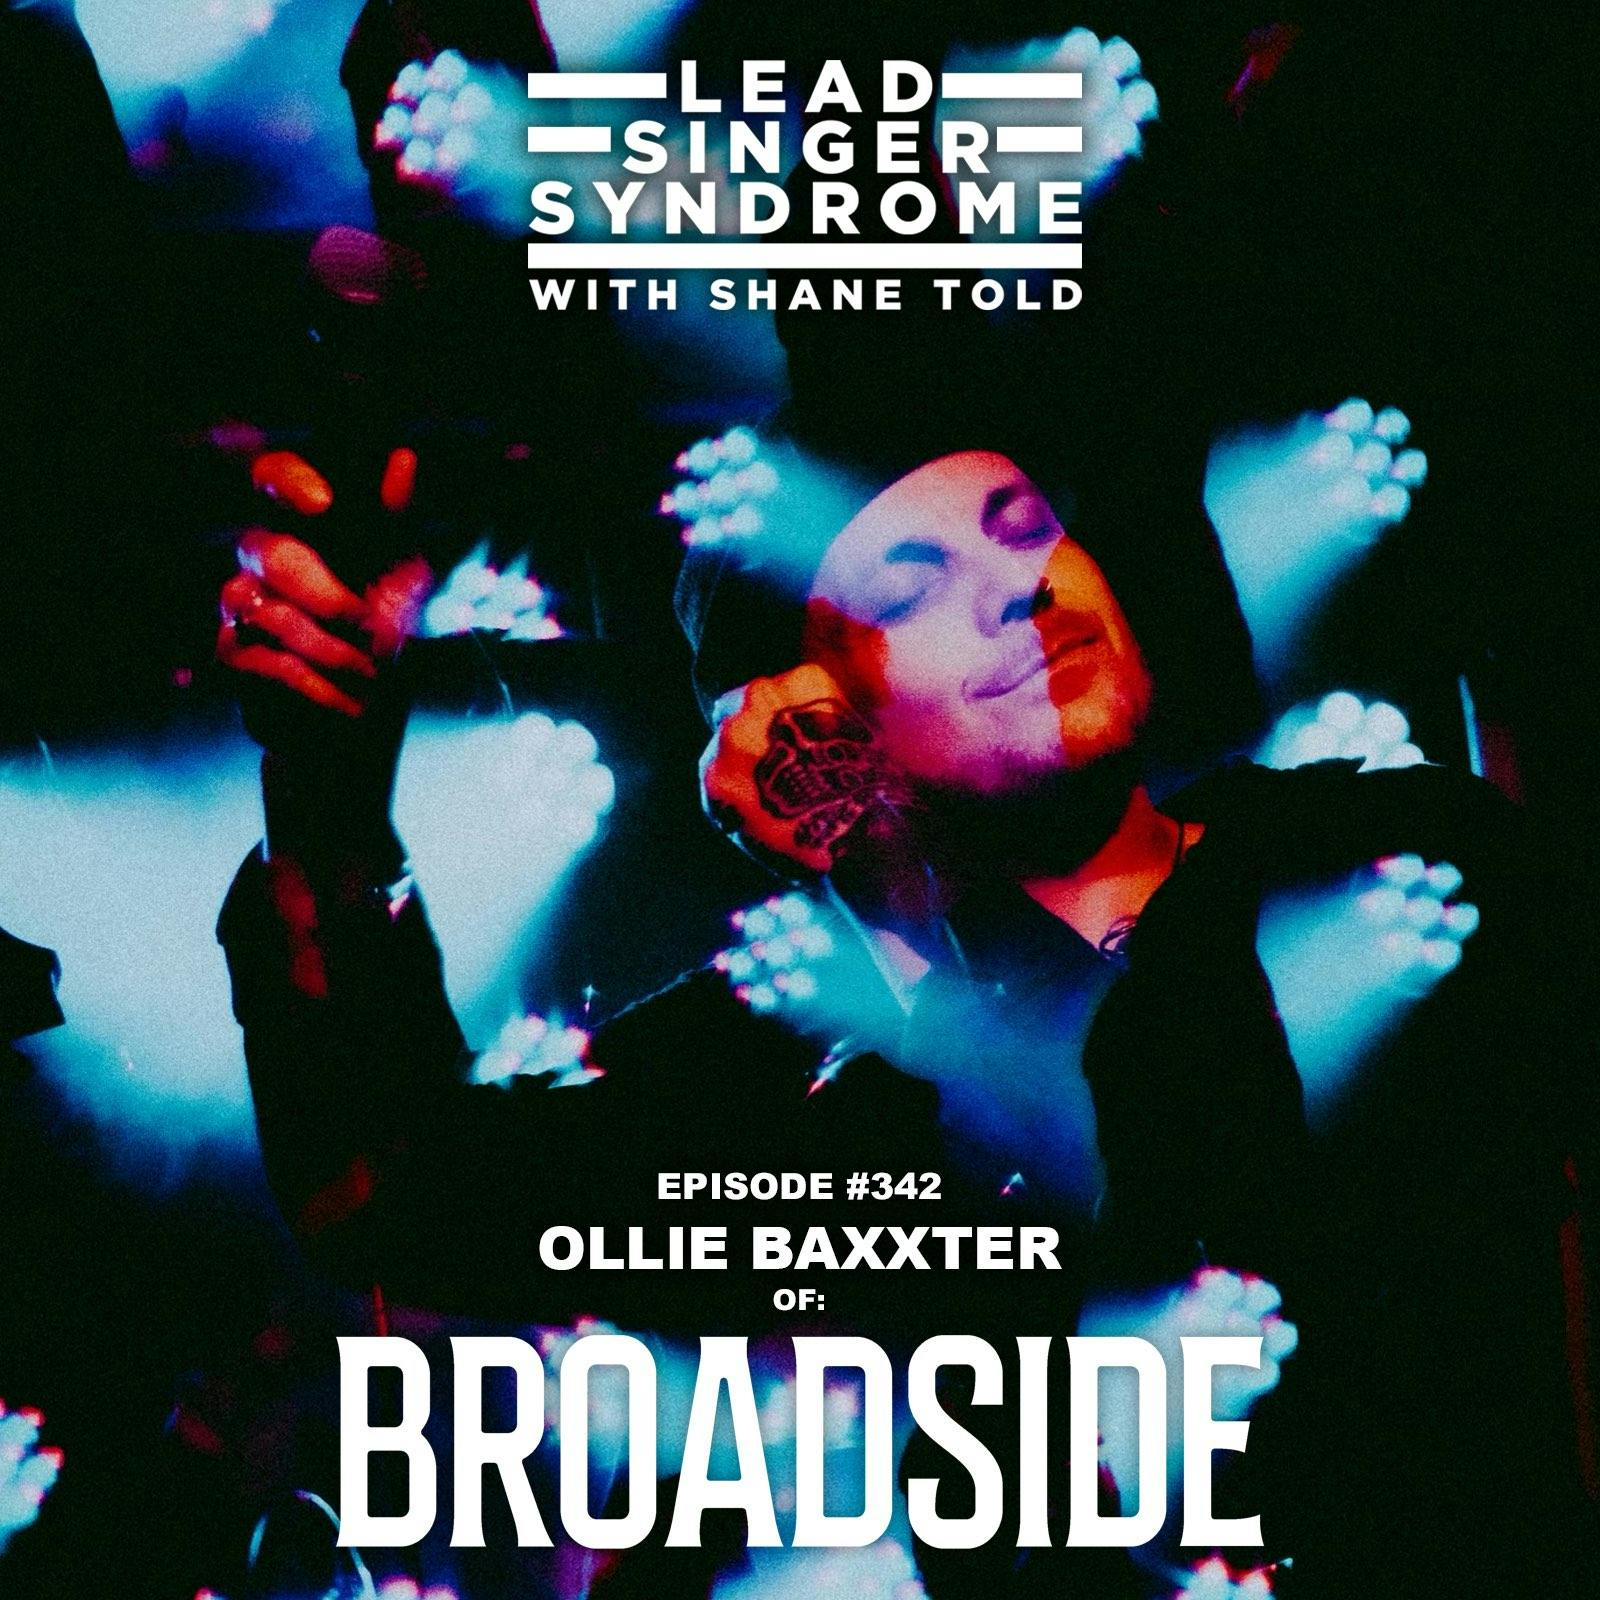 Ollie Baxxter (Broadside) returns!